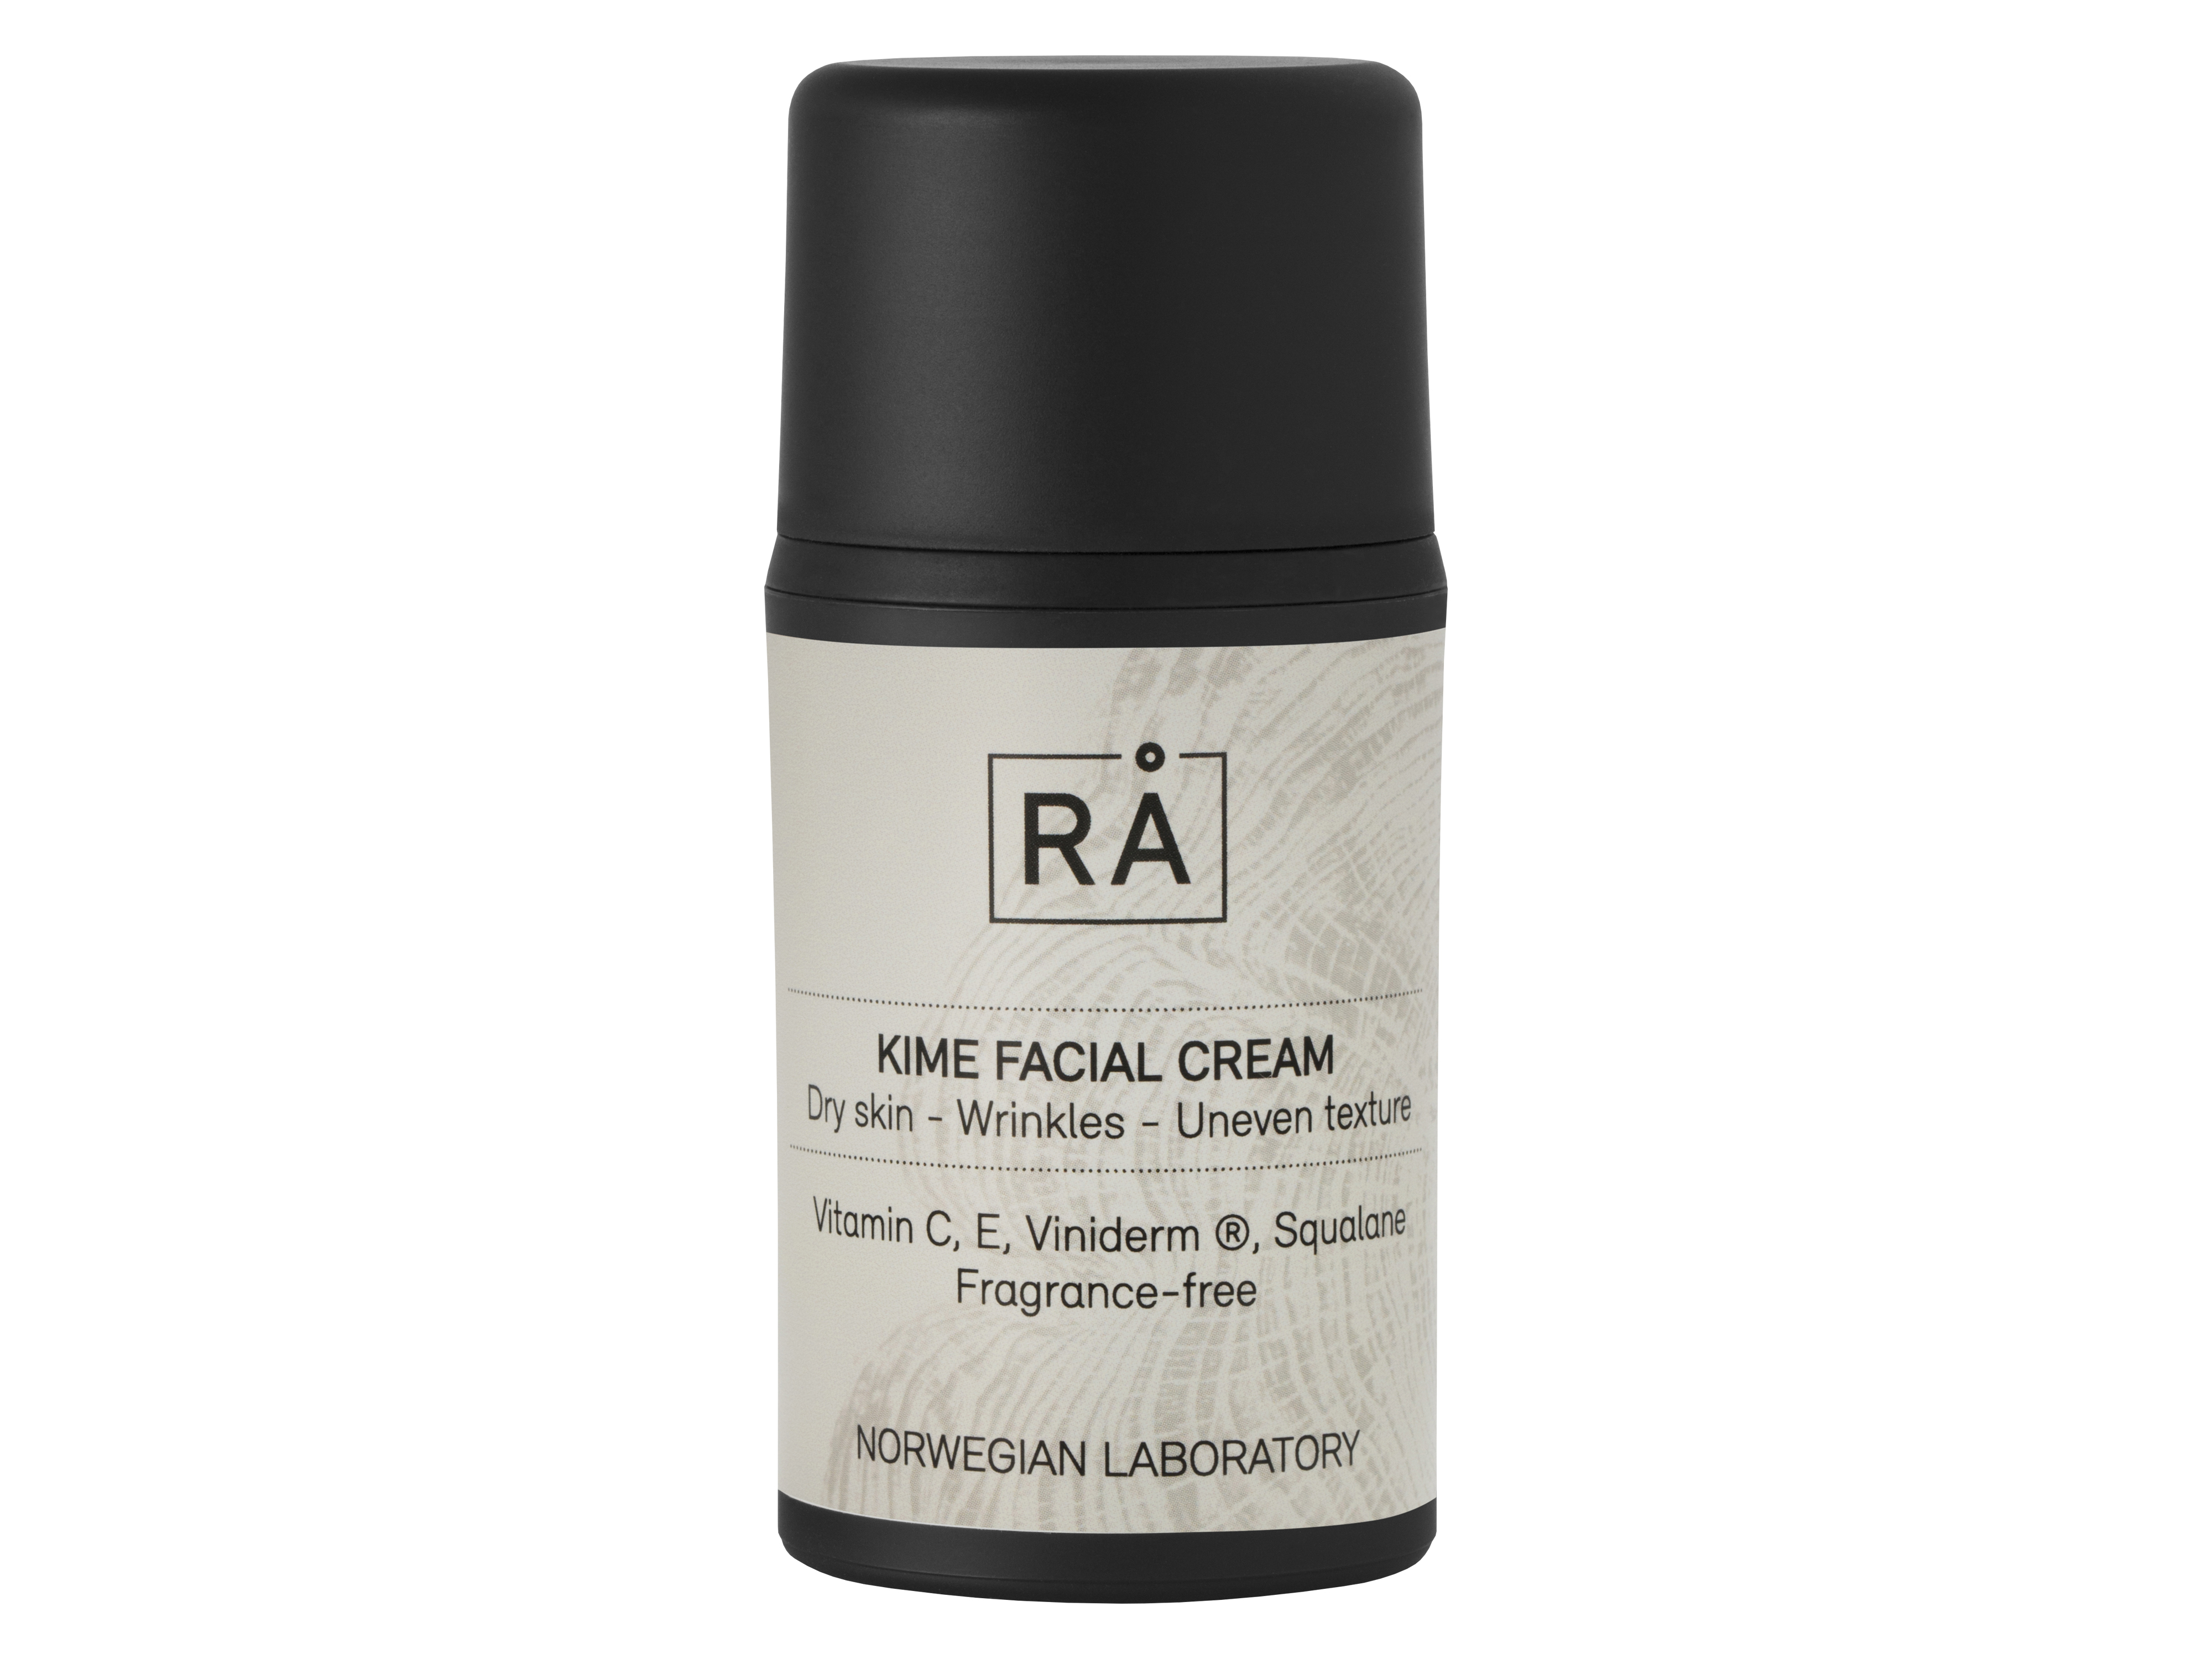 RÅ Kime Facial Cream, 50 ml